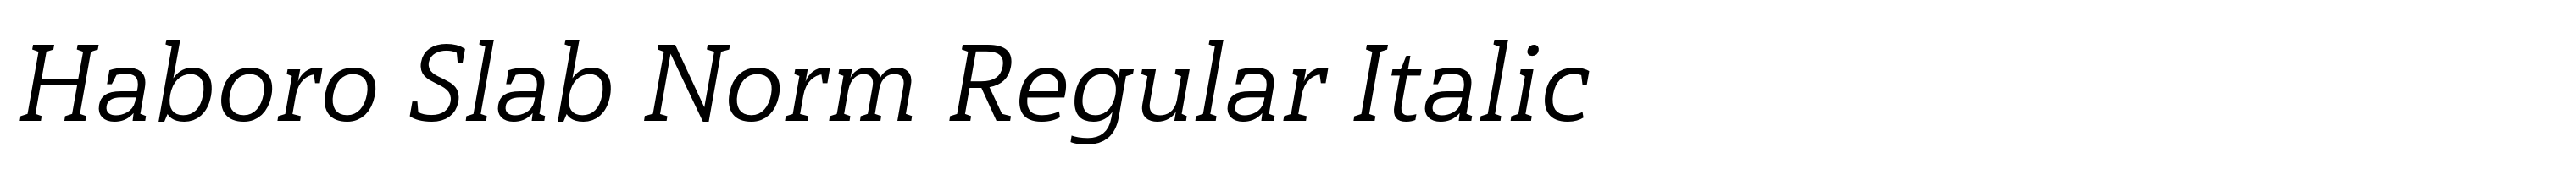 Haboro Slab Norm Regular Italic